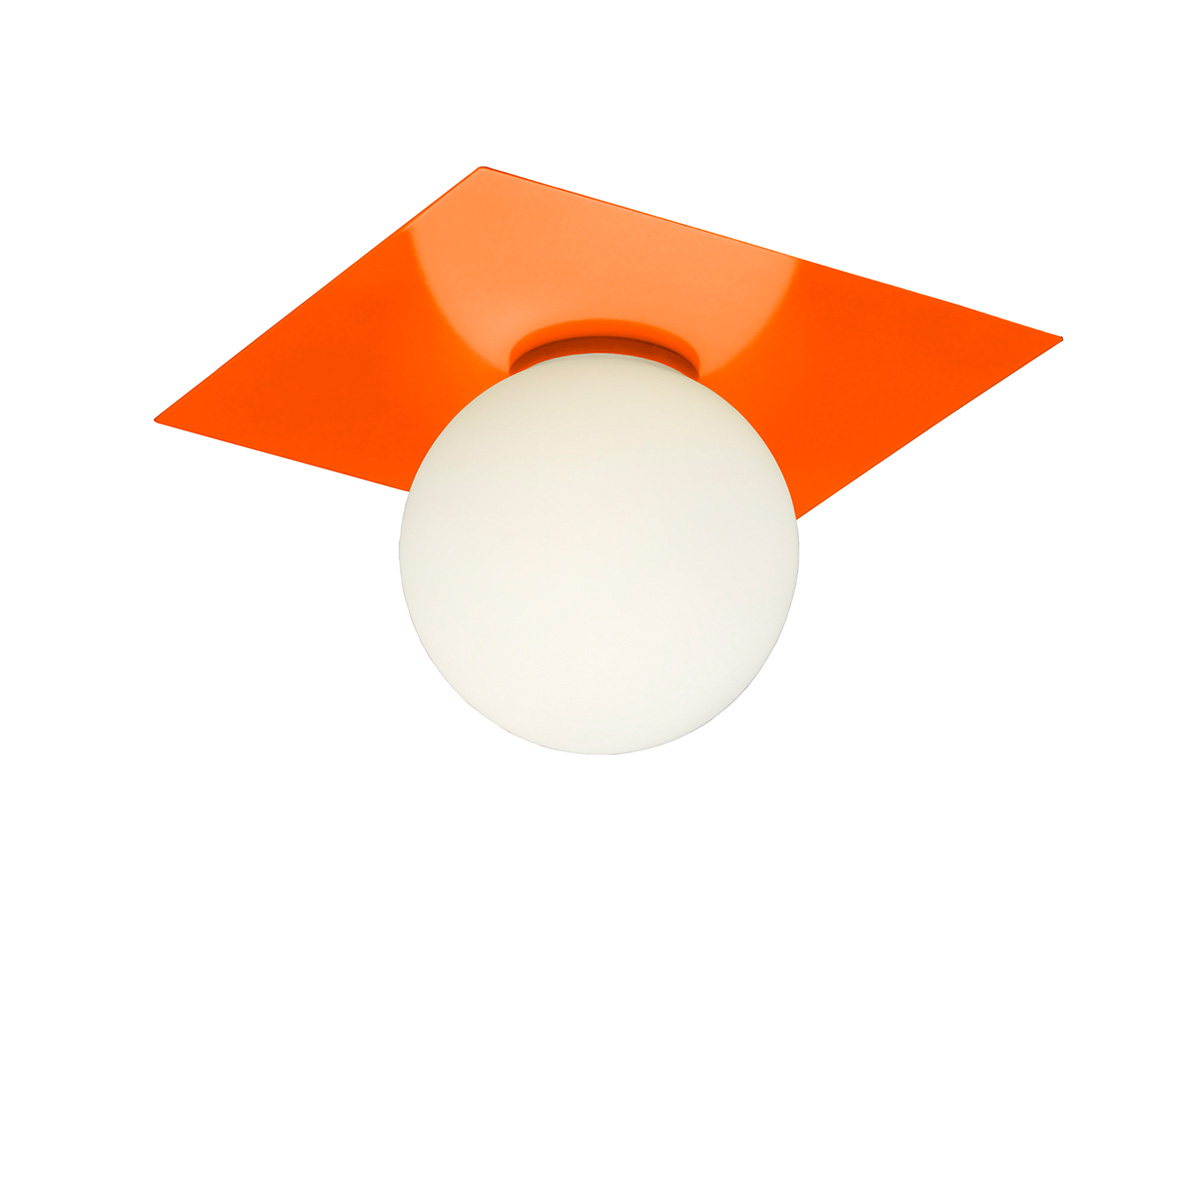 Μπάλα φωτιστικό οροφής ΜΠΑΛΕΣ modern glass ceiling ball